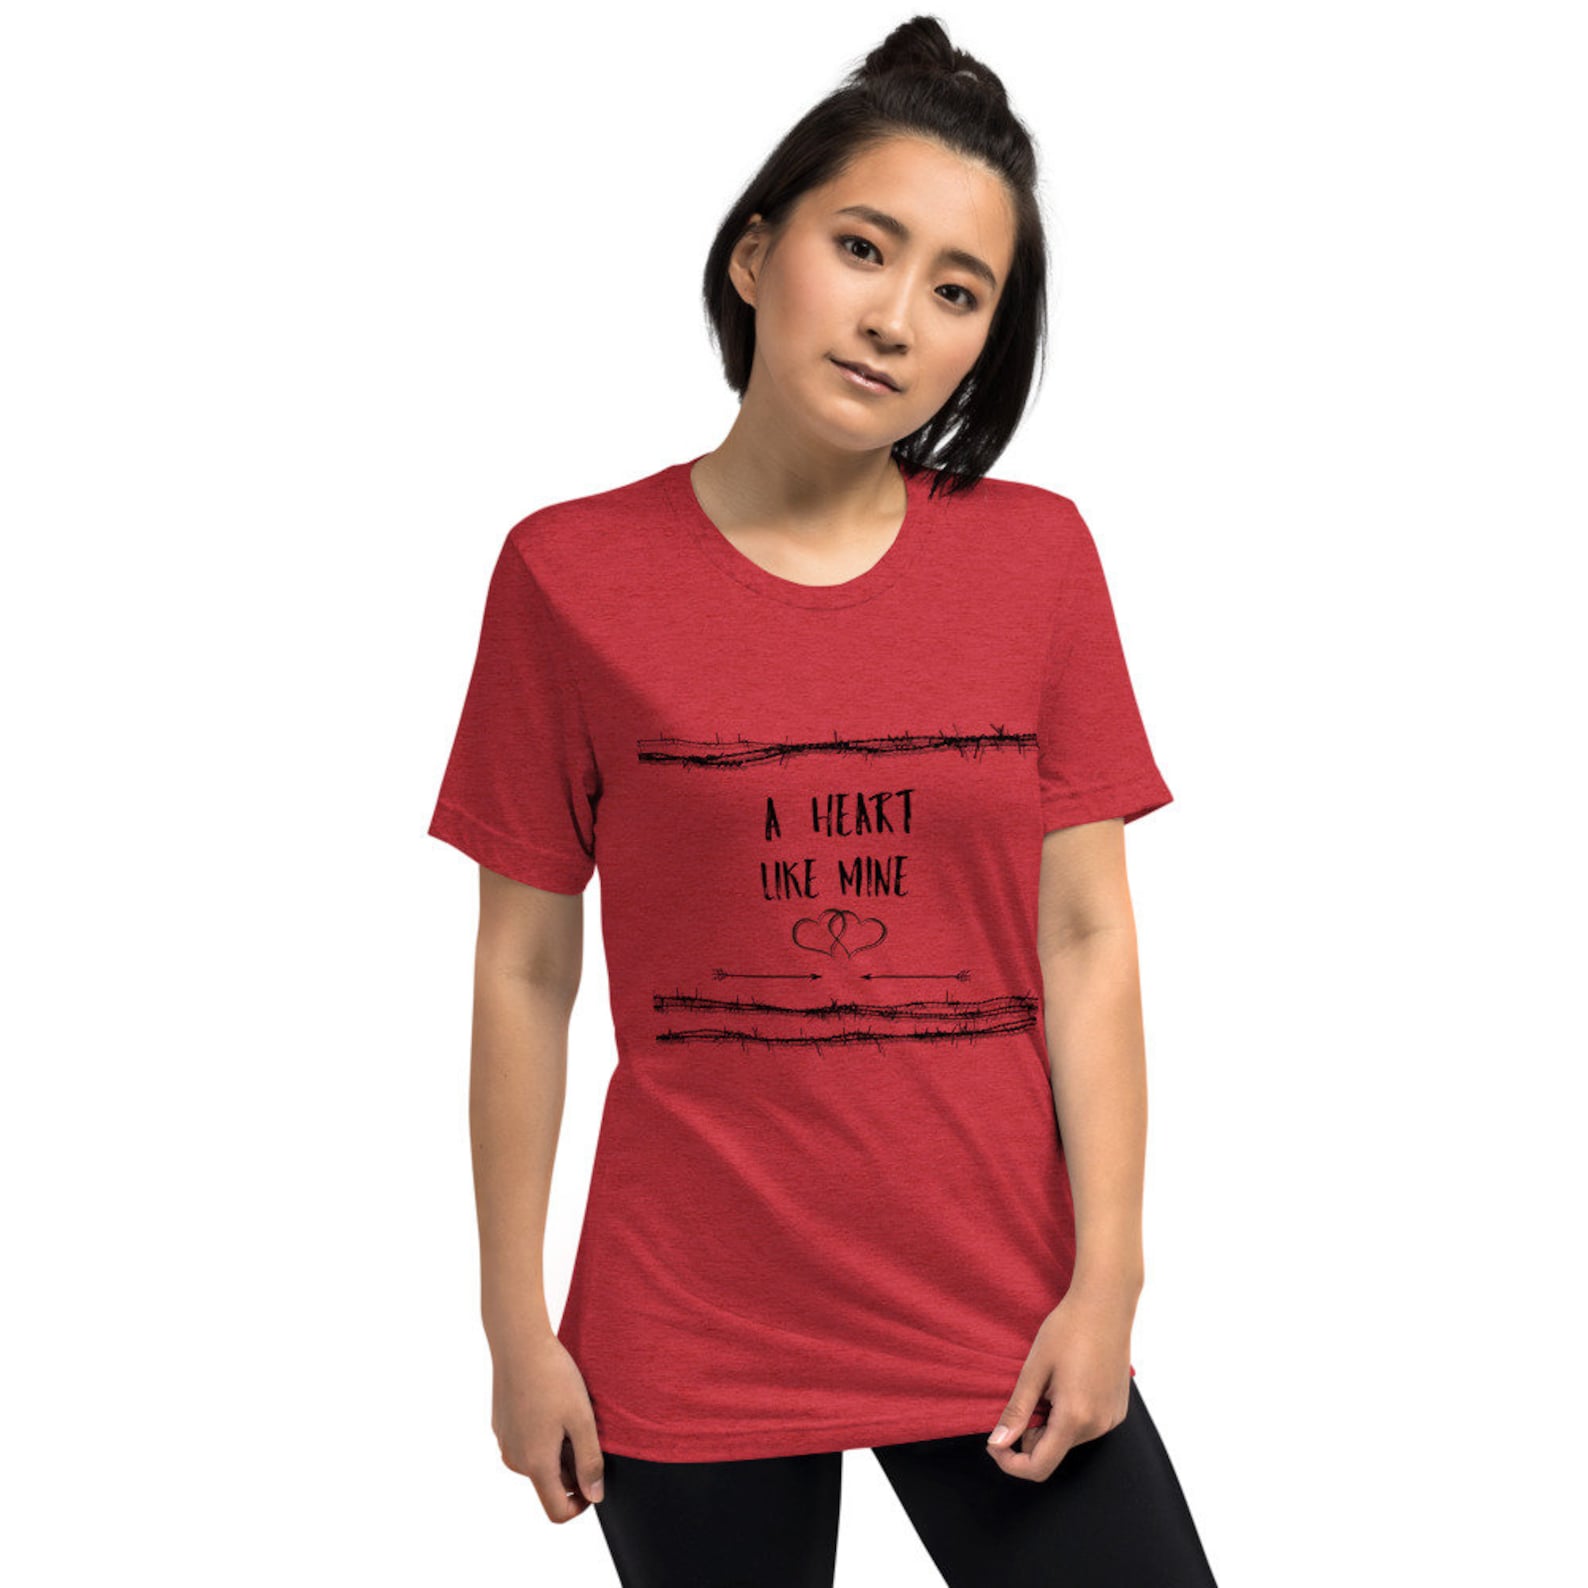 Miranda Lambert T-shirt Miranda Lambert Concert Shirt | Etsy